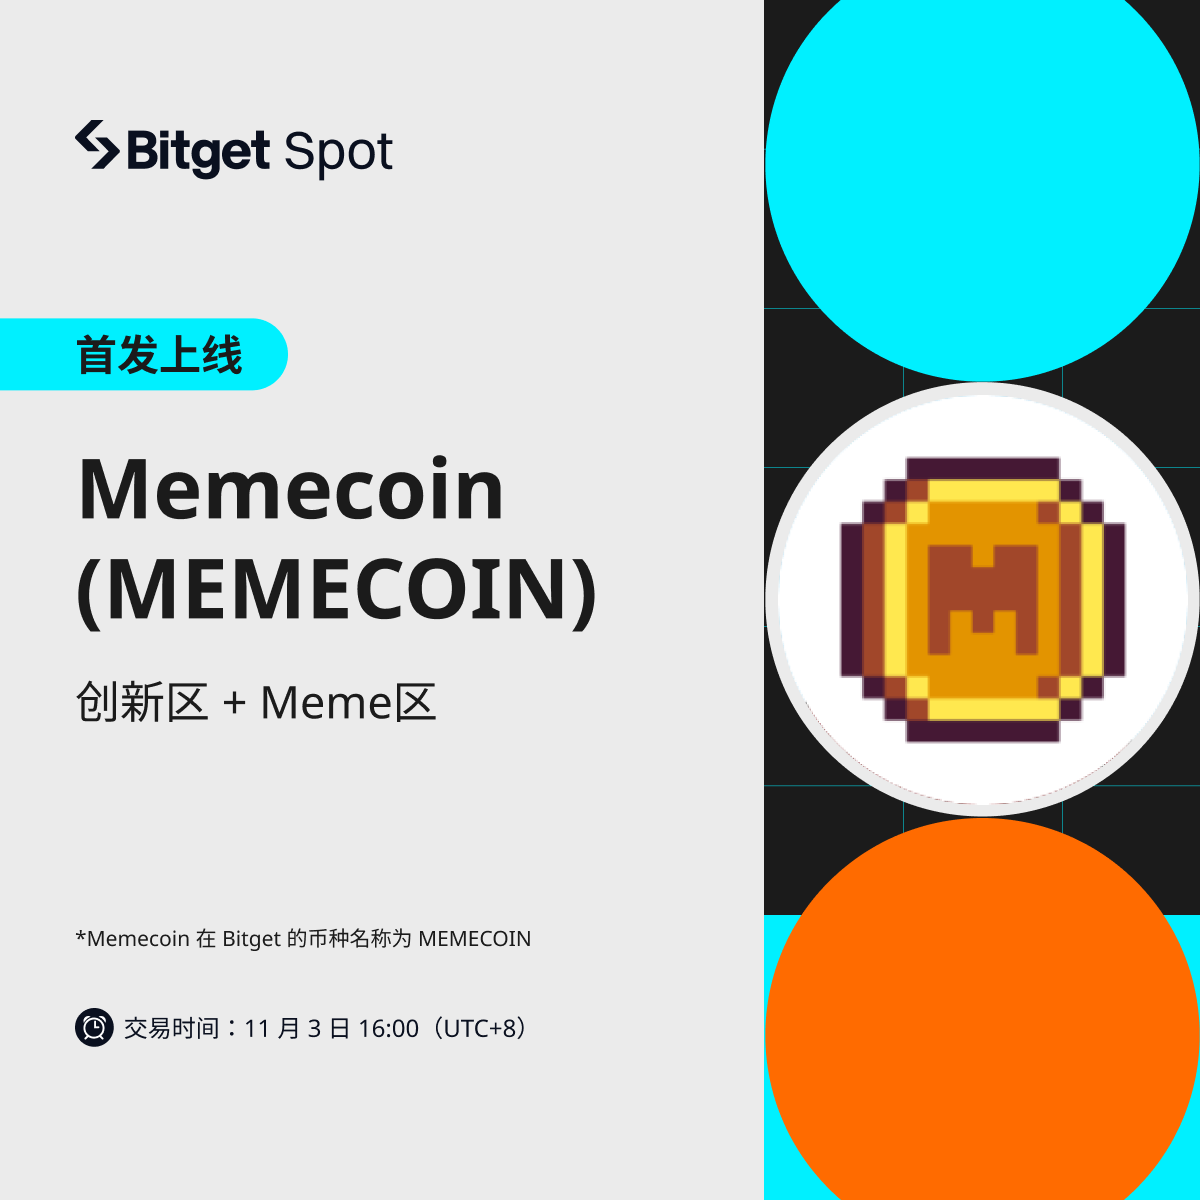 【首发上币】🚀#Memecoin（MEMECOIN）将上线 Bitget 创新区和 Meme 区，充值通道已开启！ 🪙交易时间：11月3日16:00（UTC+8） 🪙提现时间：11月4日16:00（UTC+8） 新币详情✅bitgetapp.com/zh-CN/support/… 一键三连，并 @ 3位好友抽10位瓜分100U新币奖励🧧